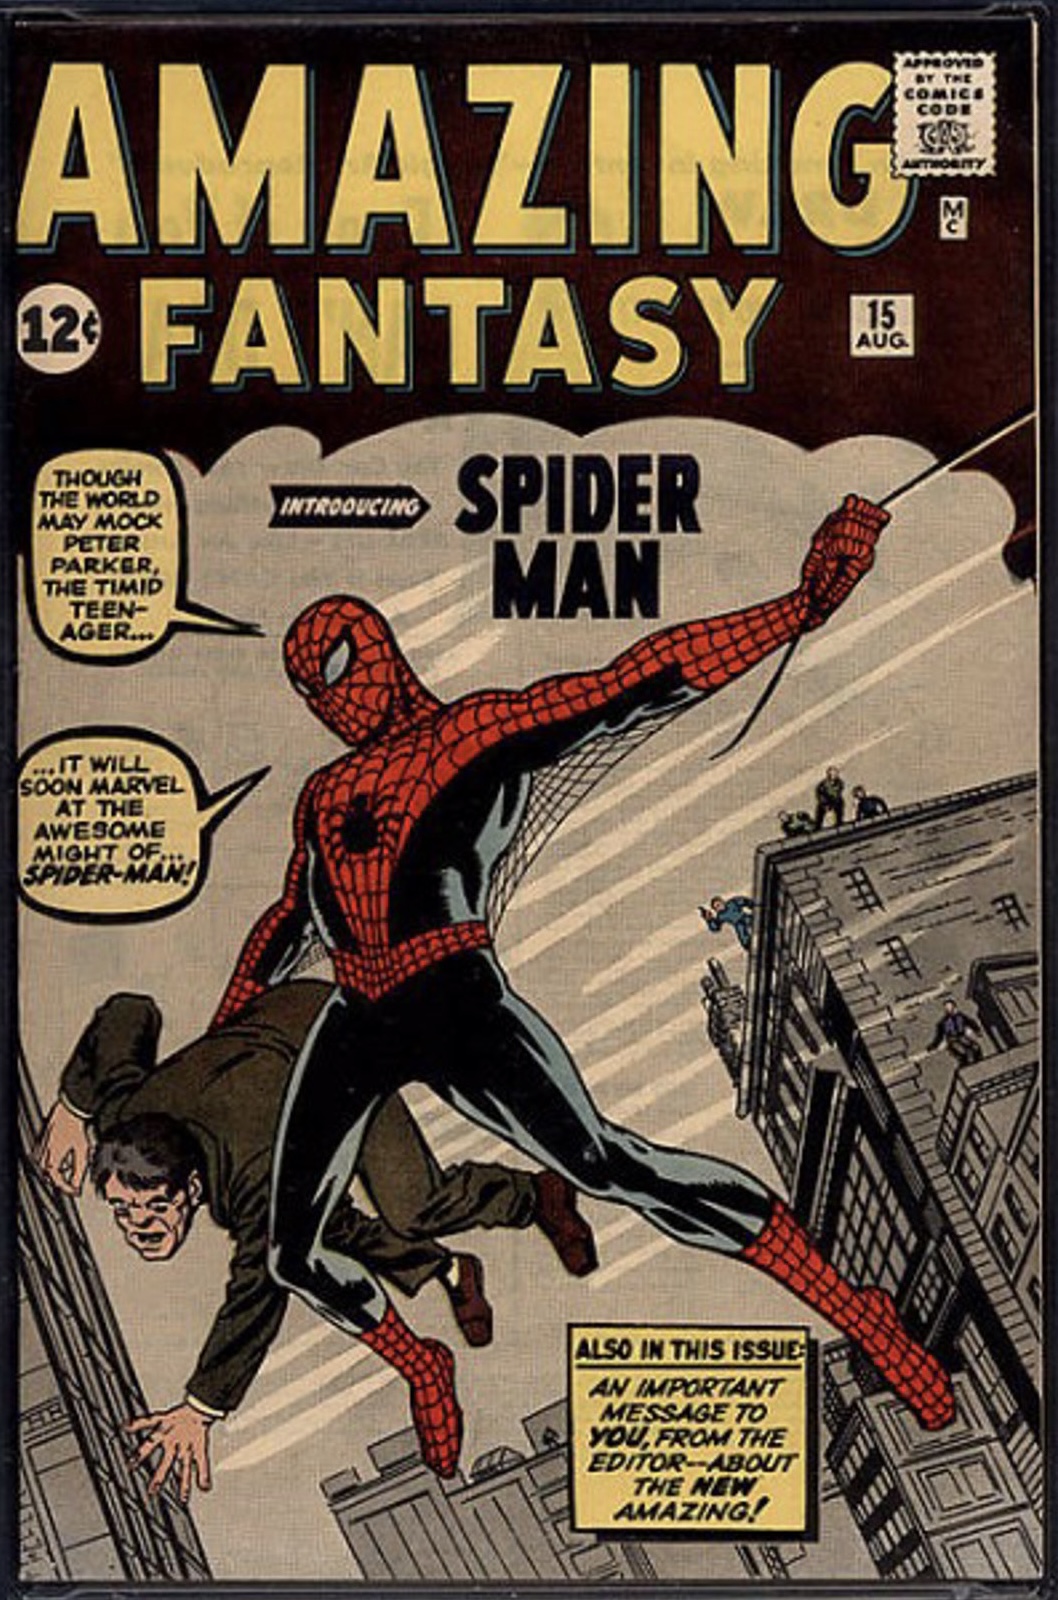 El primer número de Spiderman salió en 1962. Stan Lee apostó a un personaje en el que casi nadie confiaba